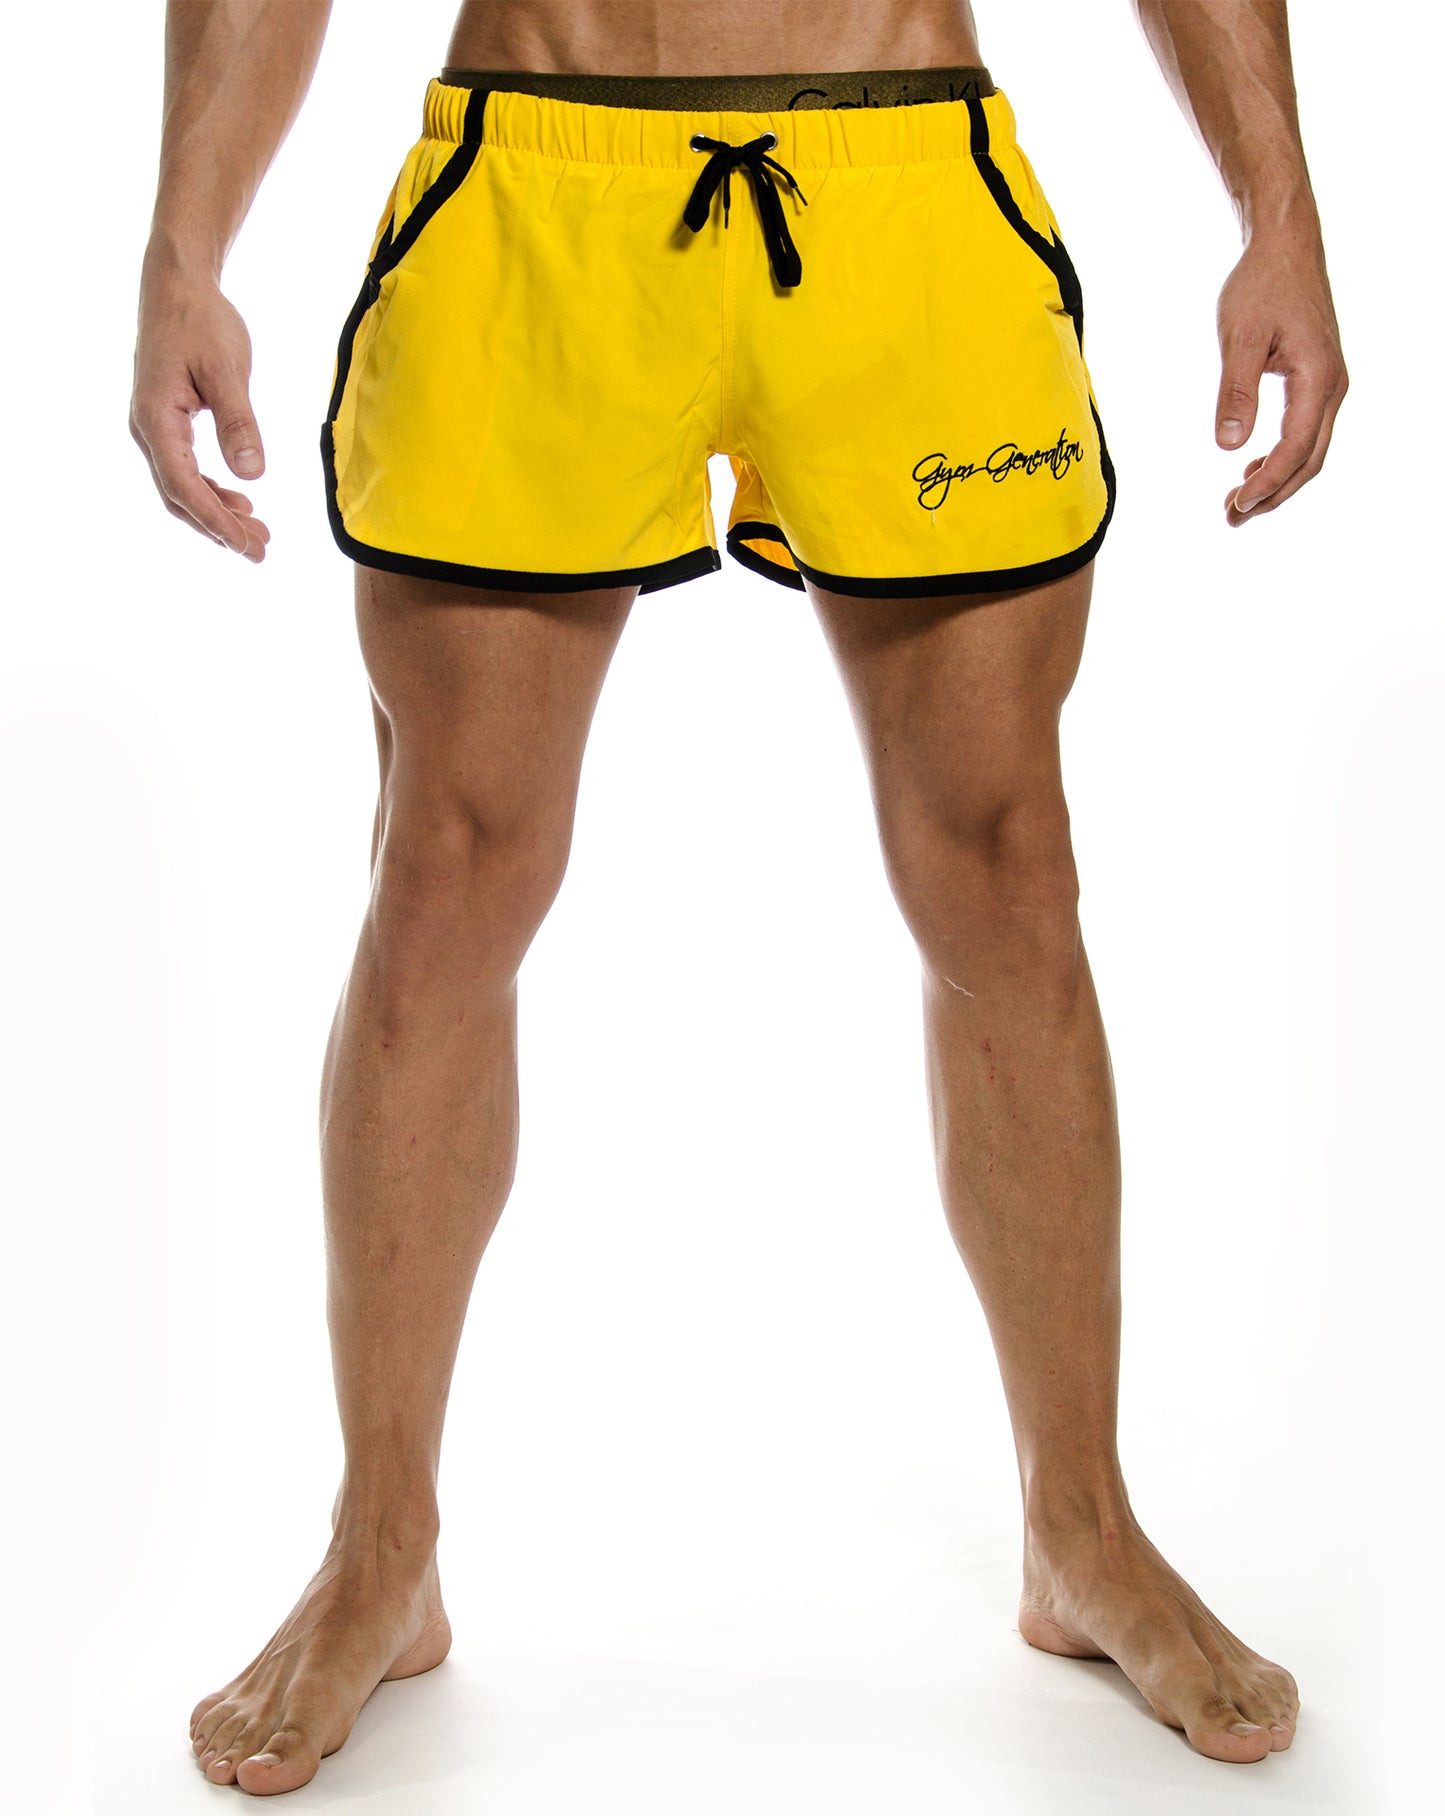 Stylische gelbe Zyzz Shorts von Gym Generation, mit praktischen Hosentaschen für Handy und Schlüssel, perfekt für Fitnessstudio und Outdoor-Aktivitäten.